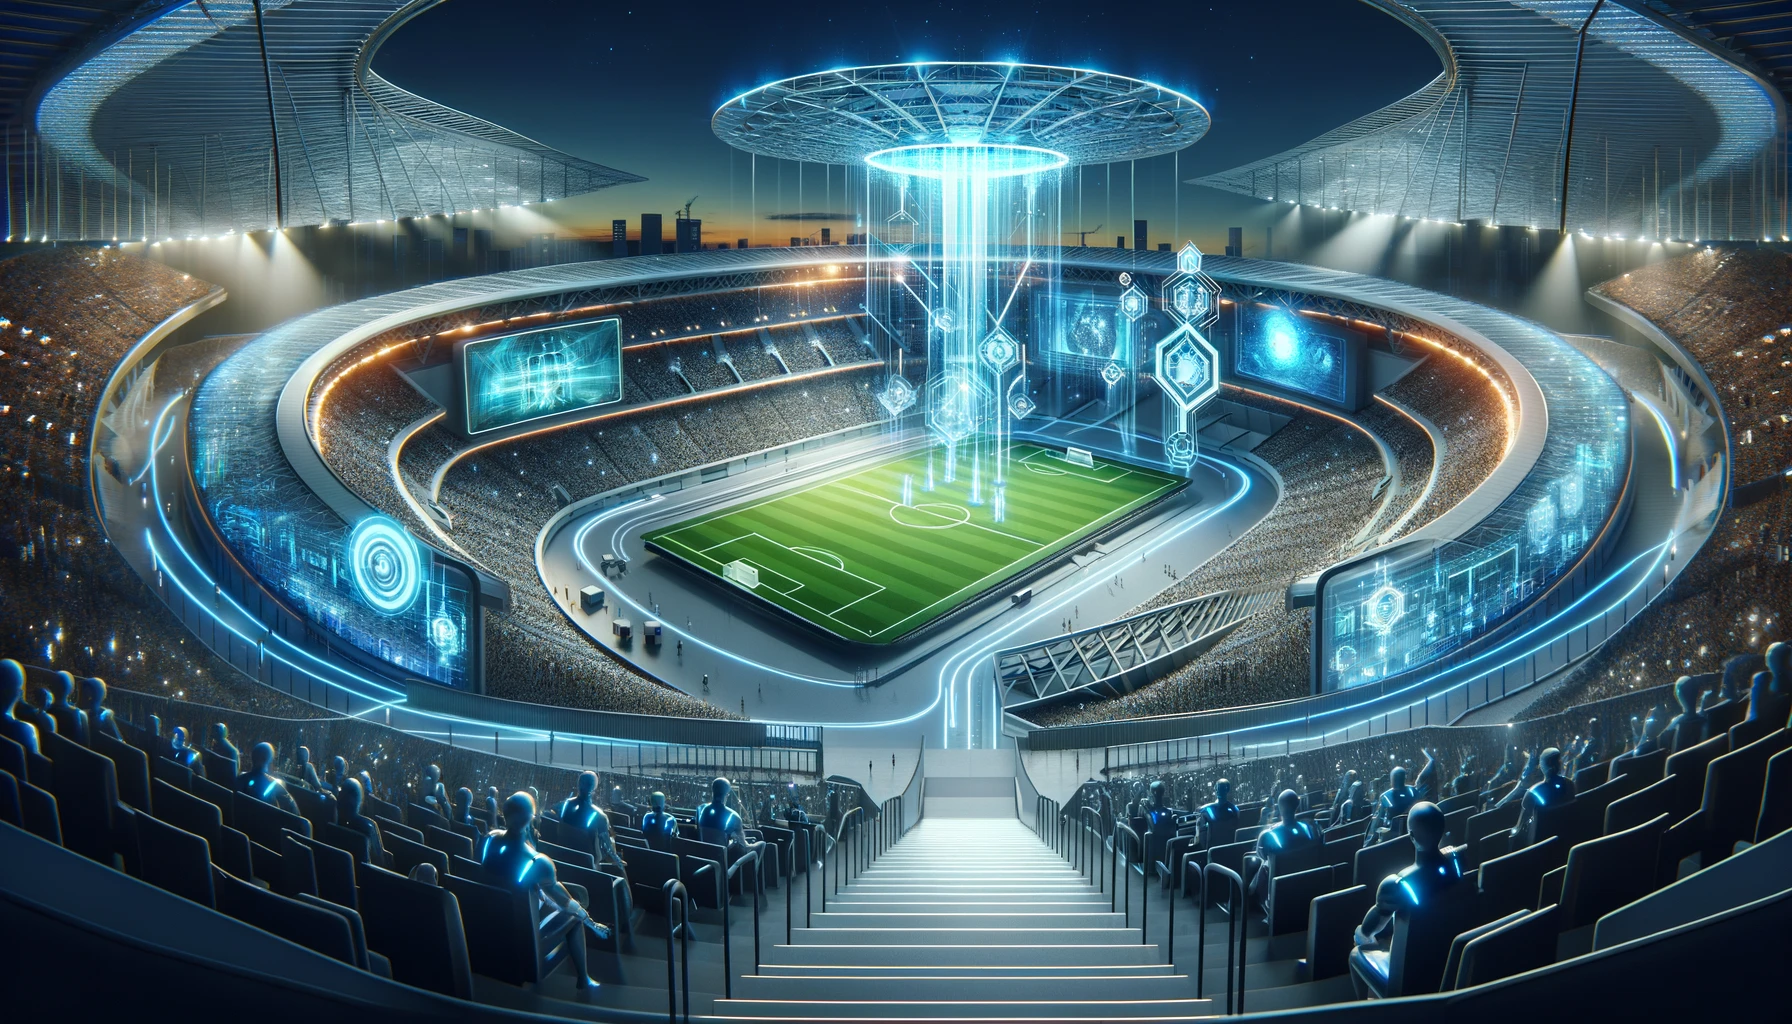 Diseño de Estadios y Espacios Deportivos: La Visión Futurista de la IA